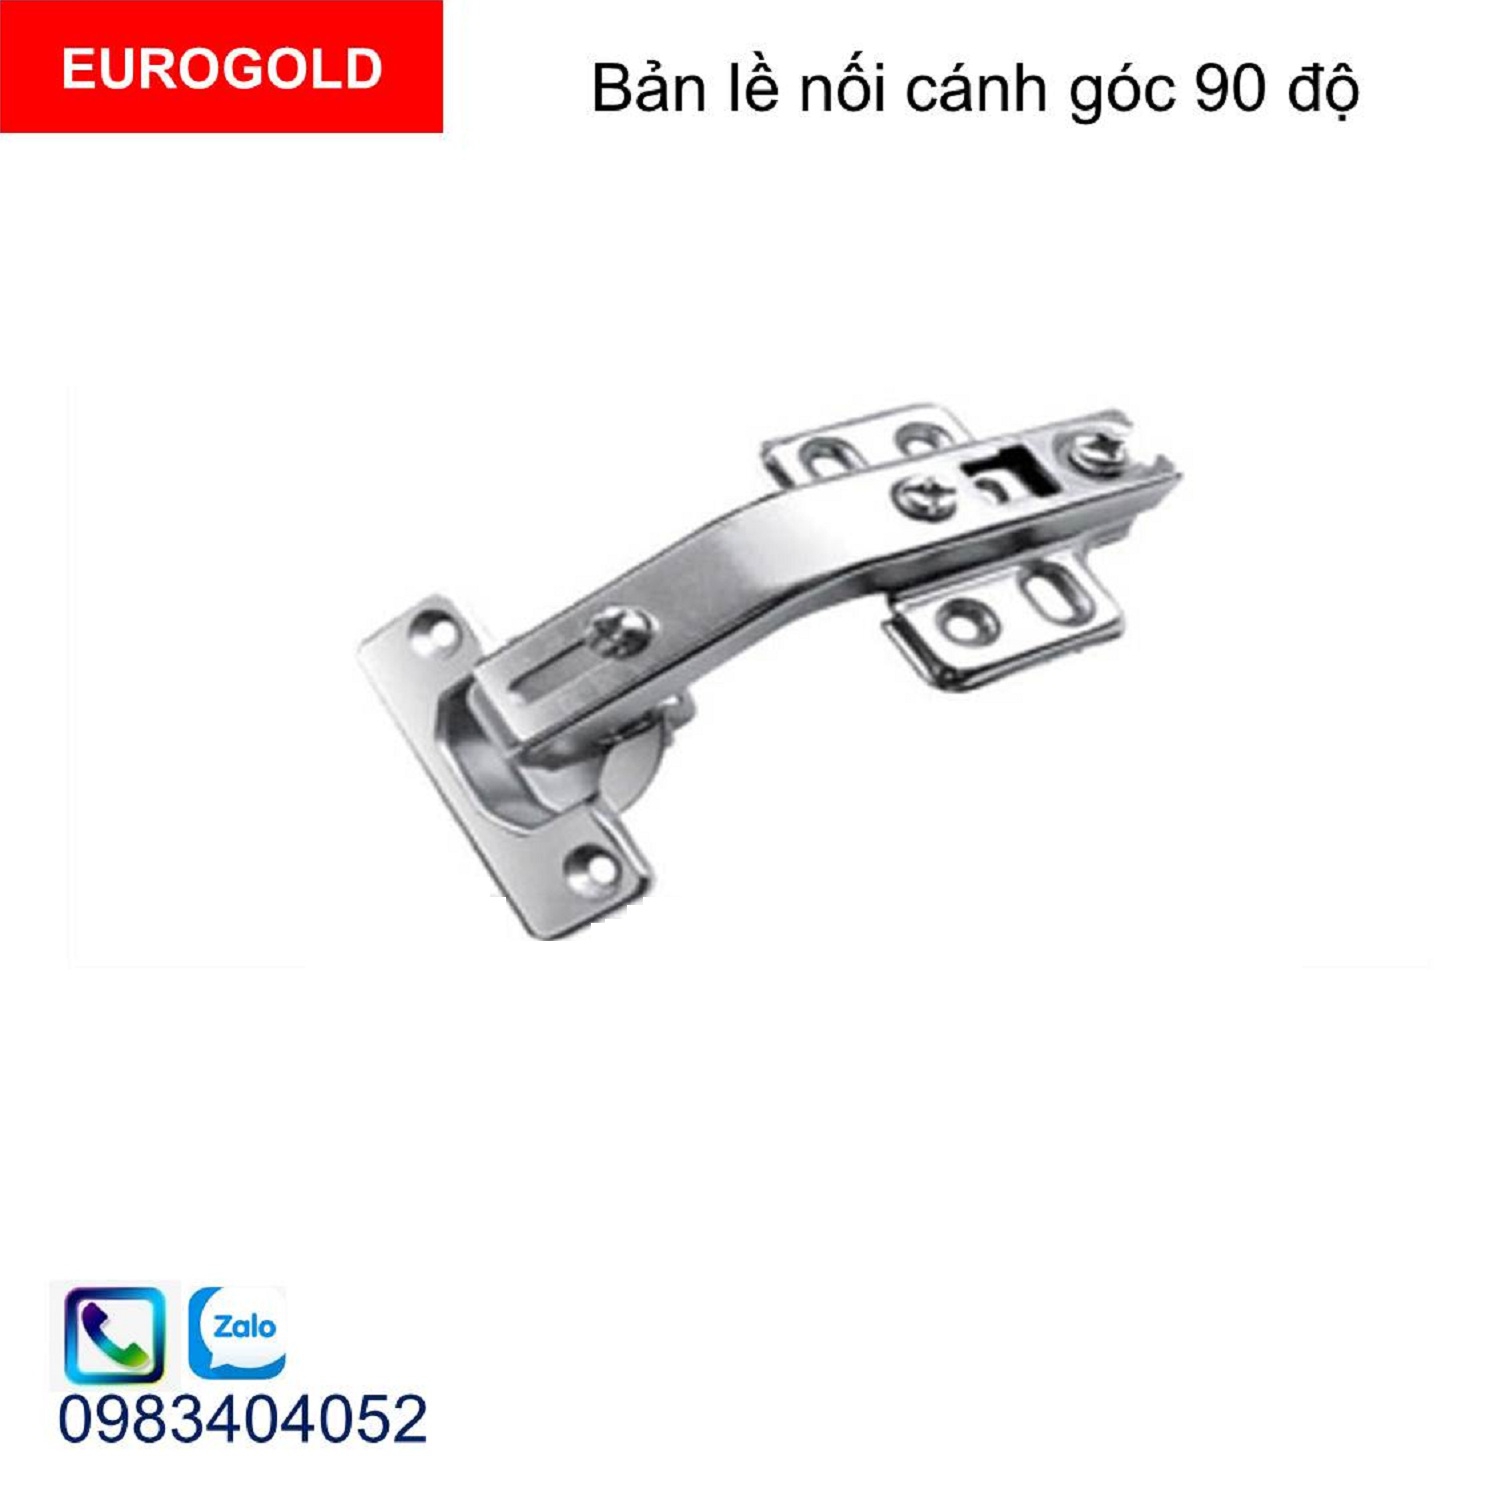 Ban-le-tu-eurogold